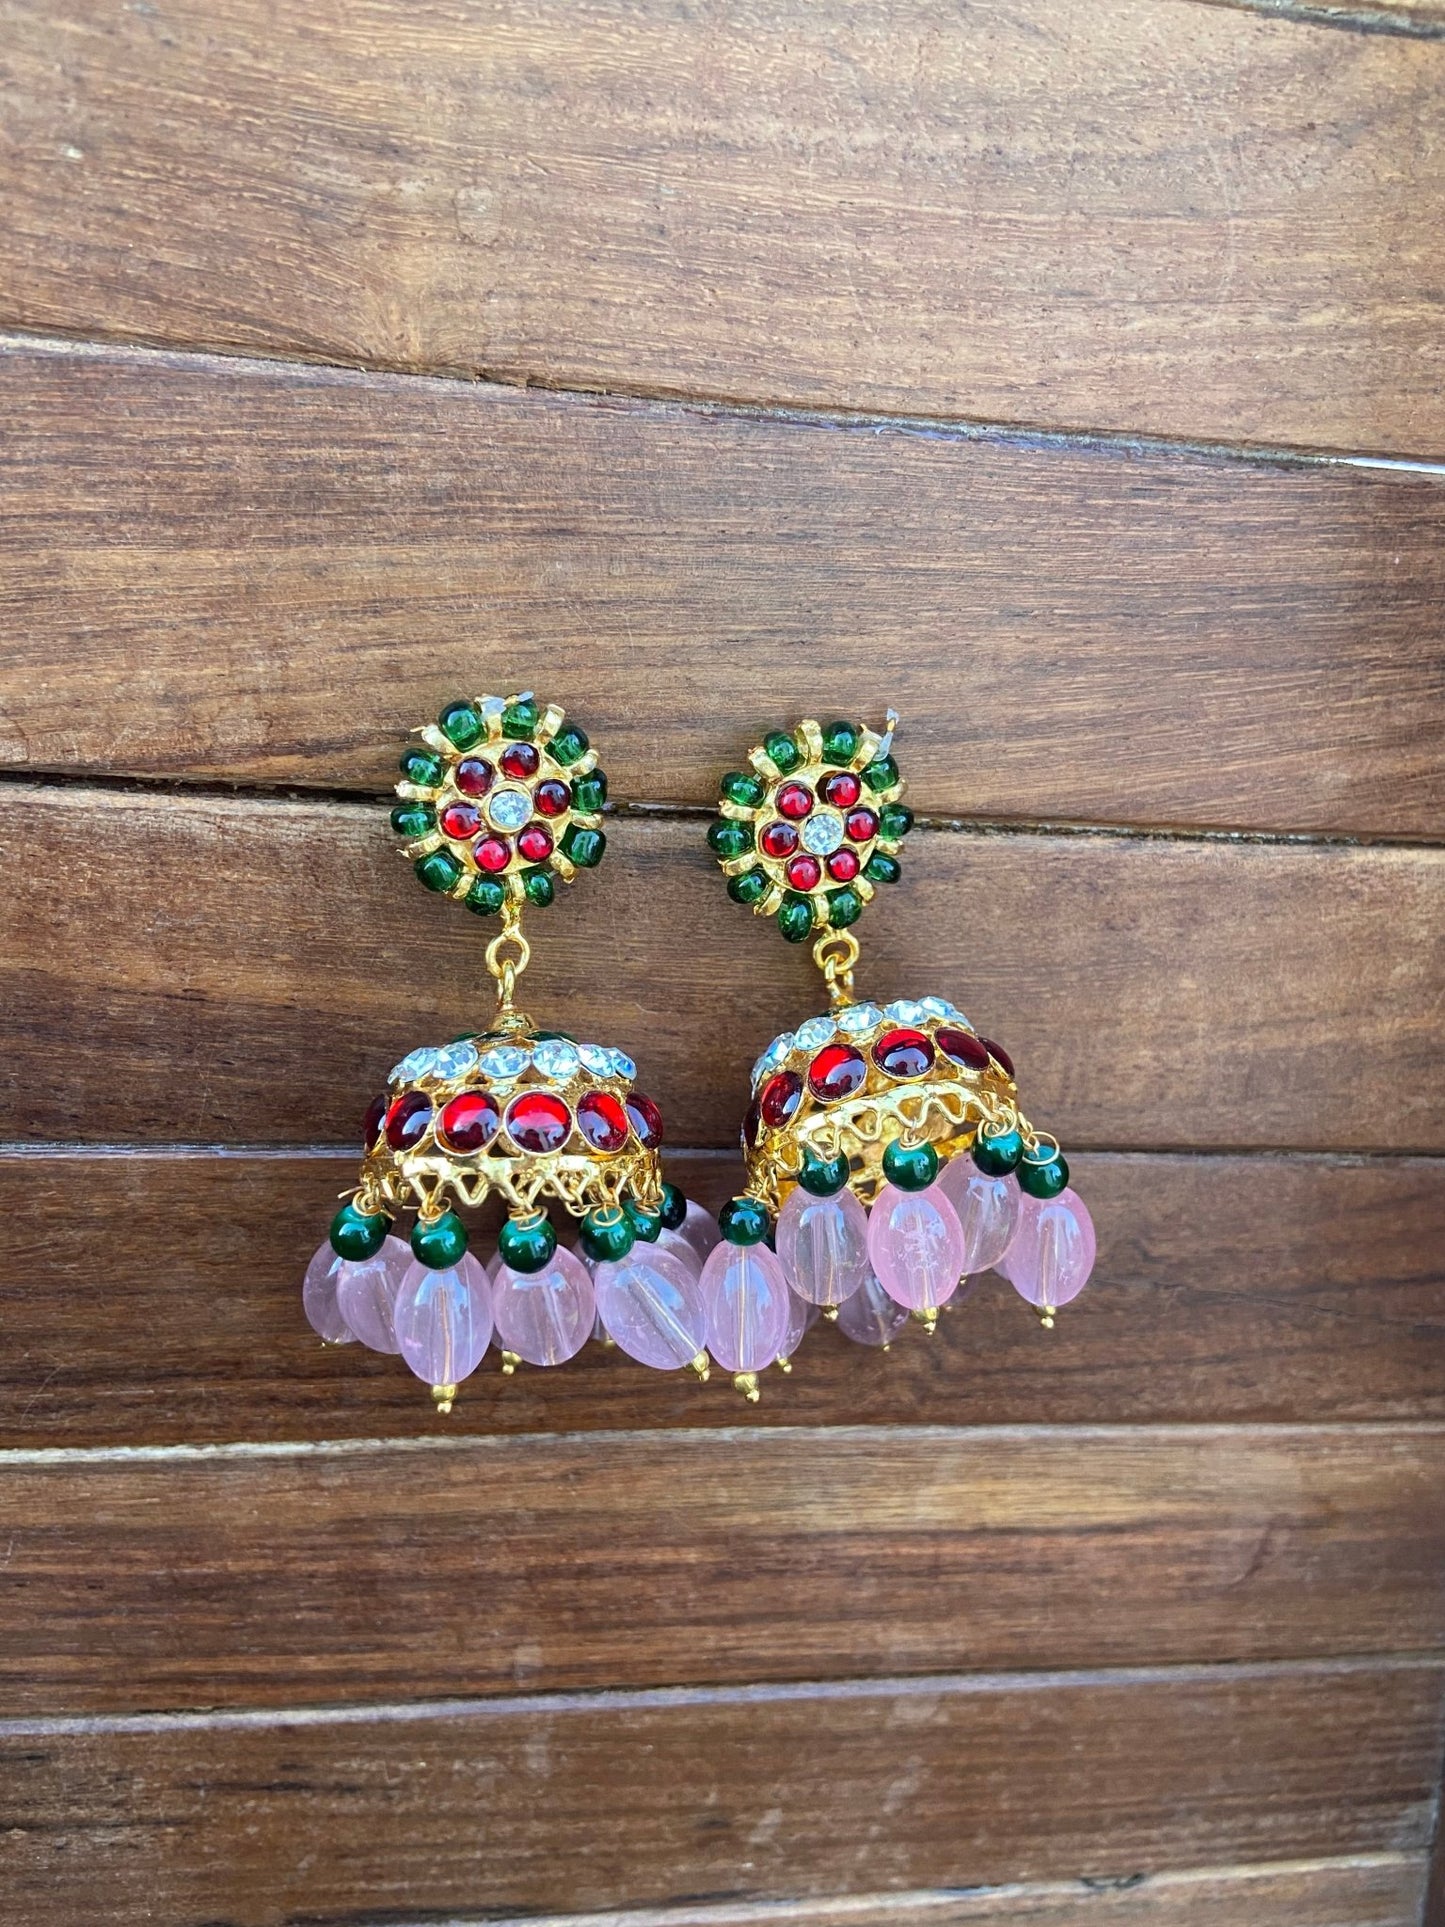 2 in 1 monalisa beads earrings ( stud+jhumka) - Alluring Accessories